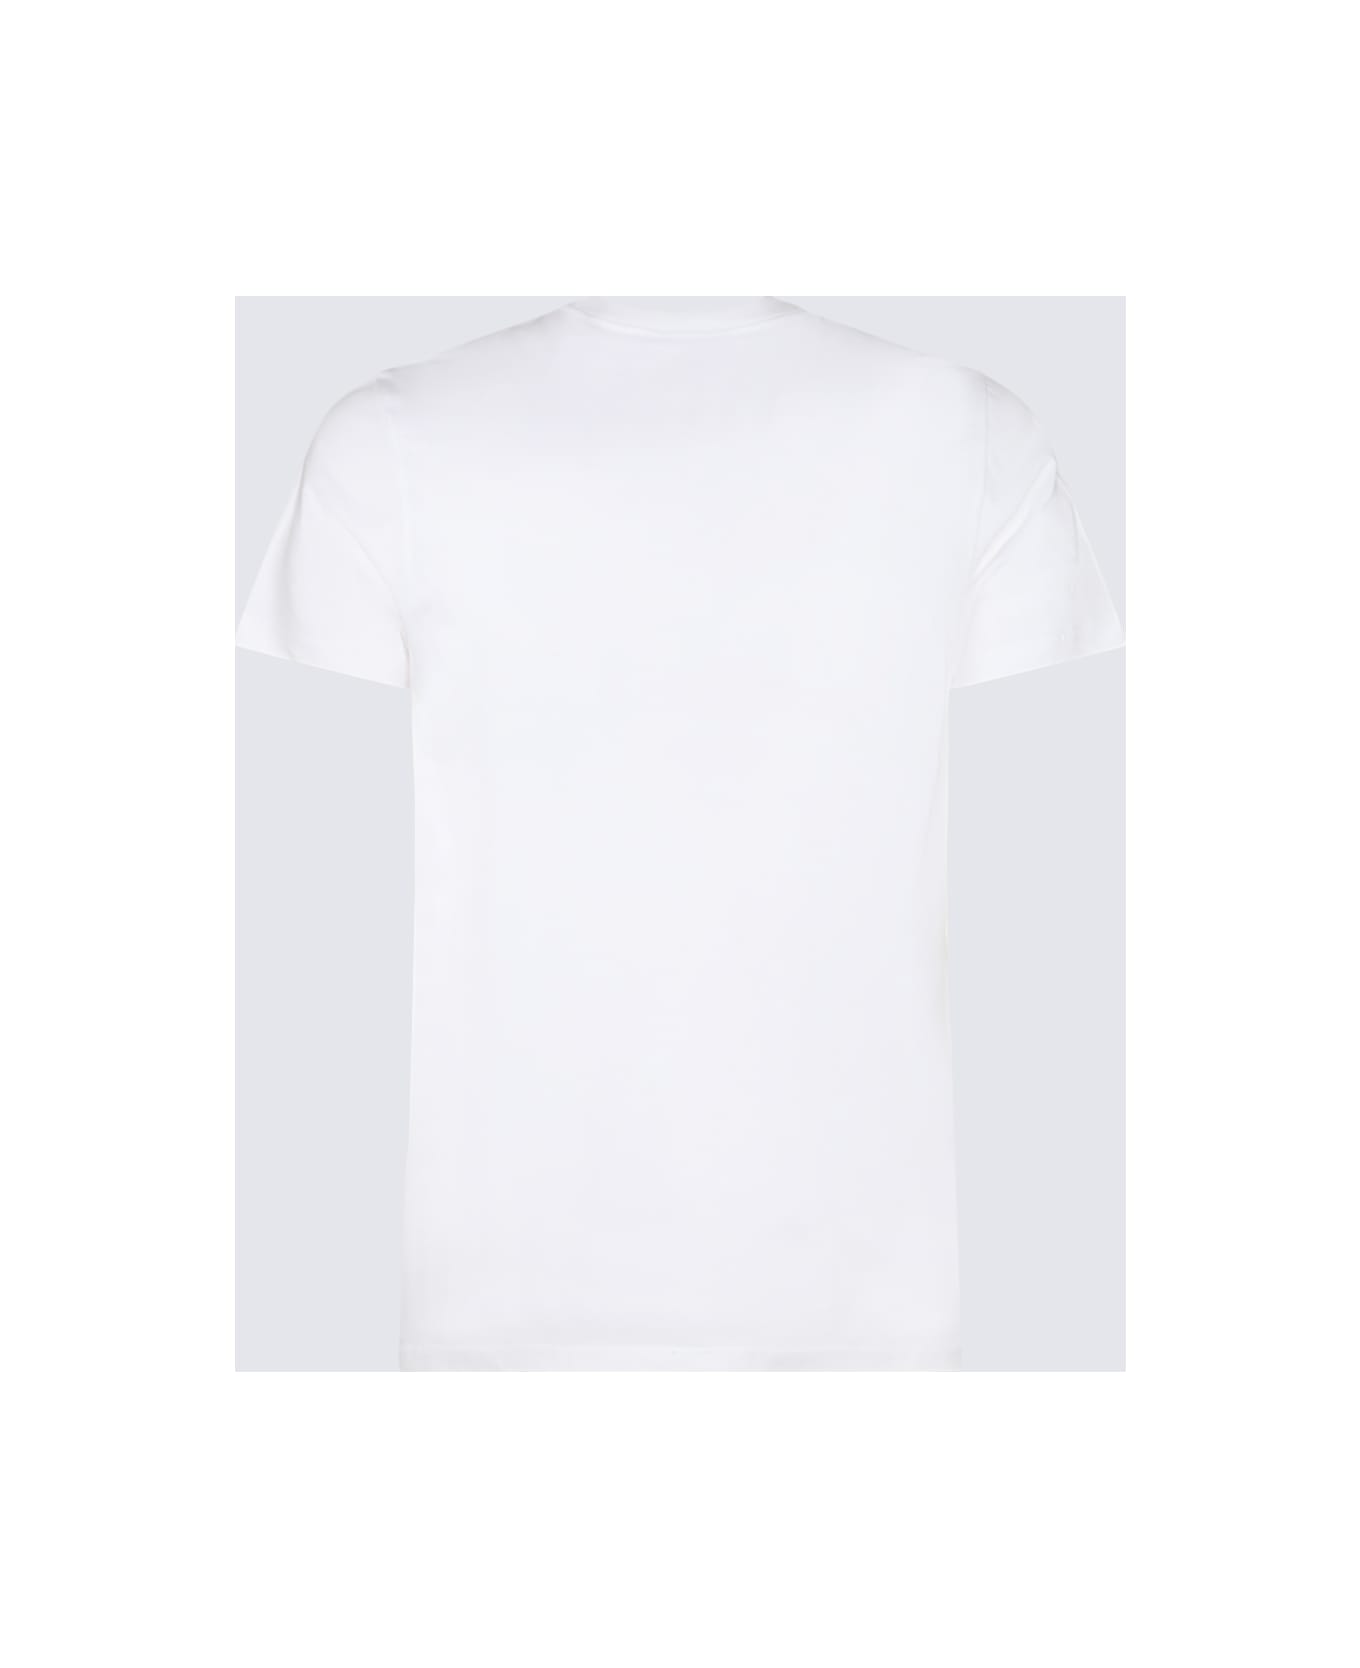 Paul Smith White Cotton T-shirt - White